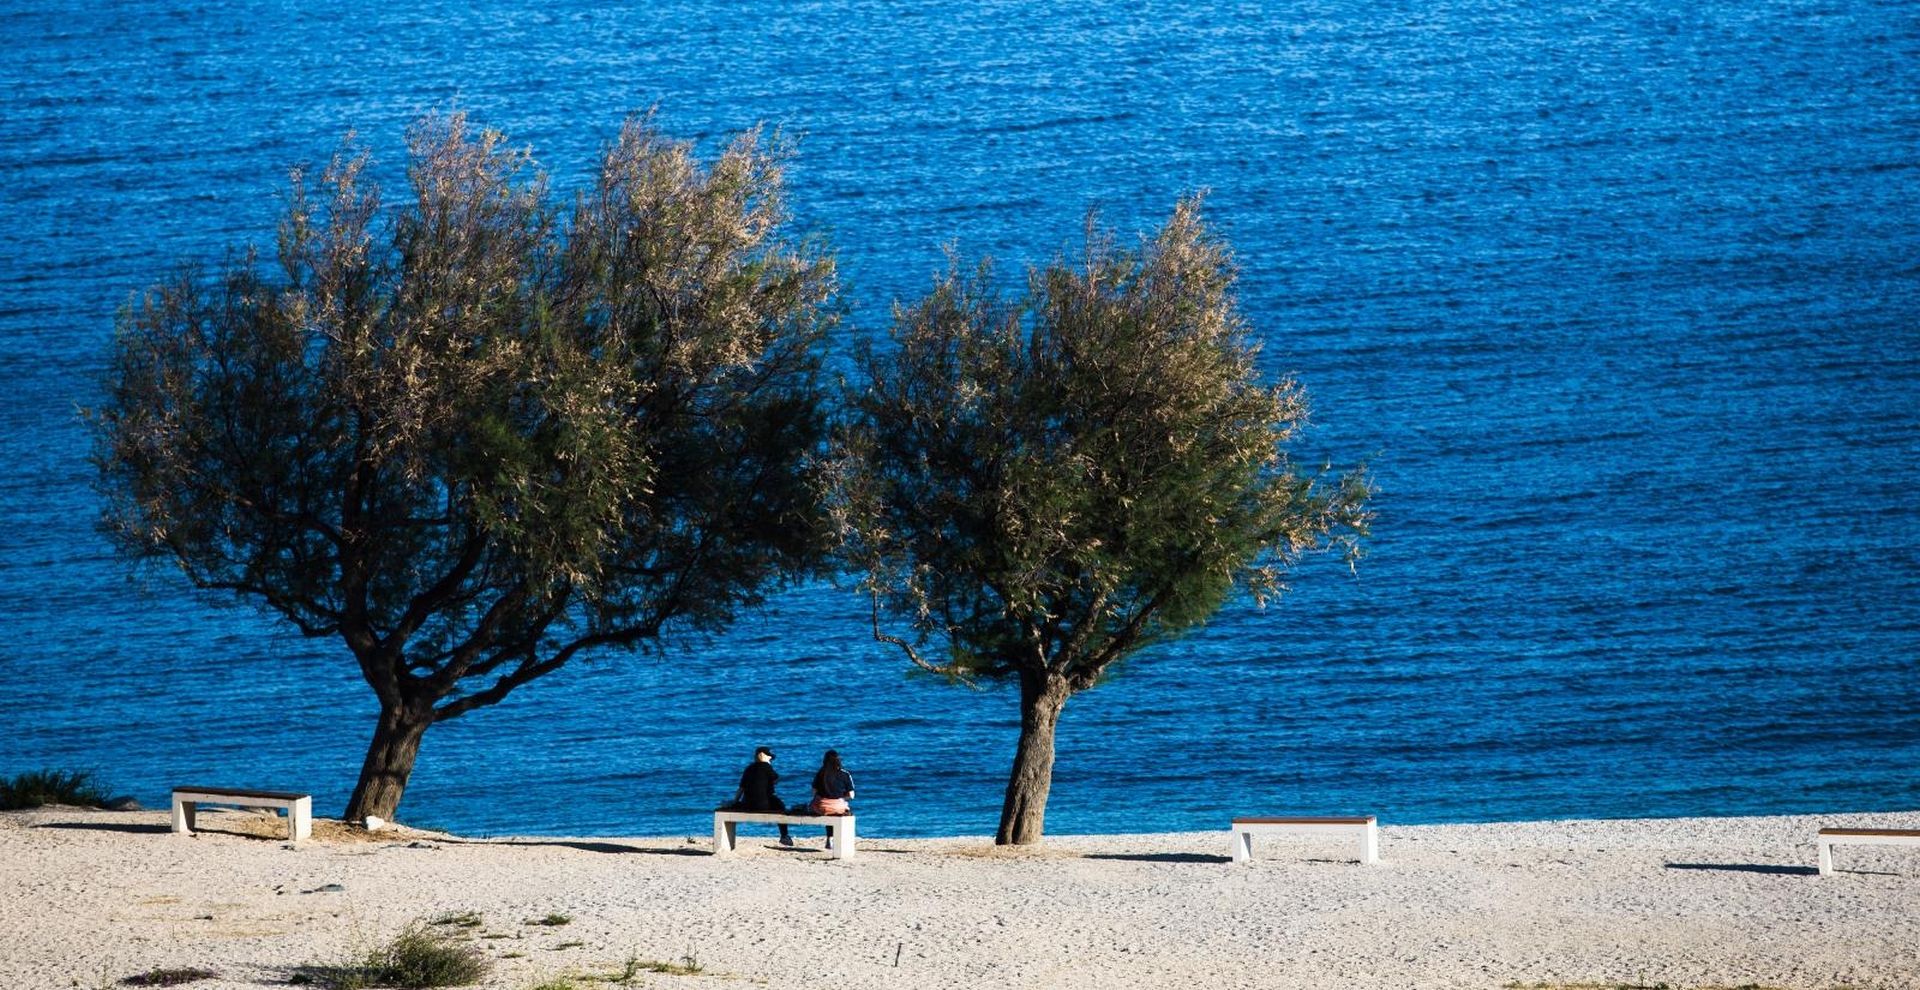 21.05.2020., Split - Plaze u Splitu jos uvijek su uglavnom prazne i bez turista unatoc popustanju mjera zastite od koronavirusa. Photo: Milan Sabic/PIXSELL